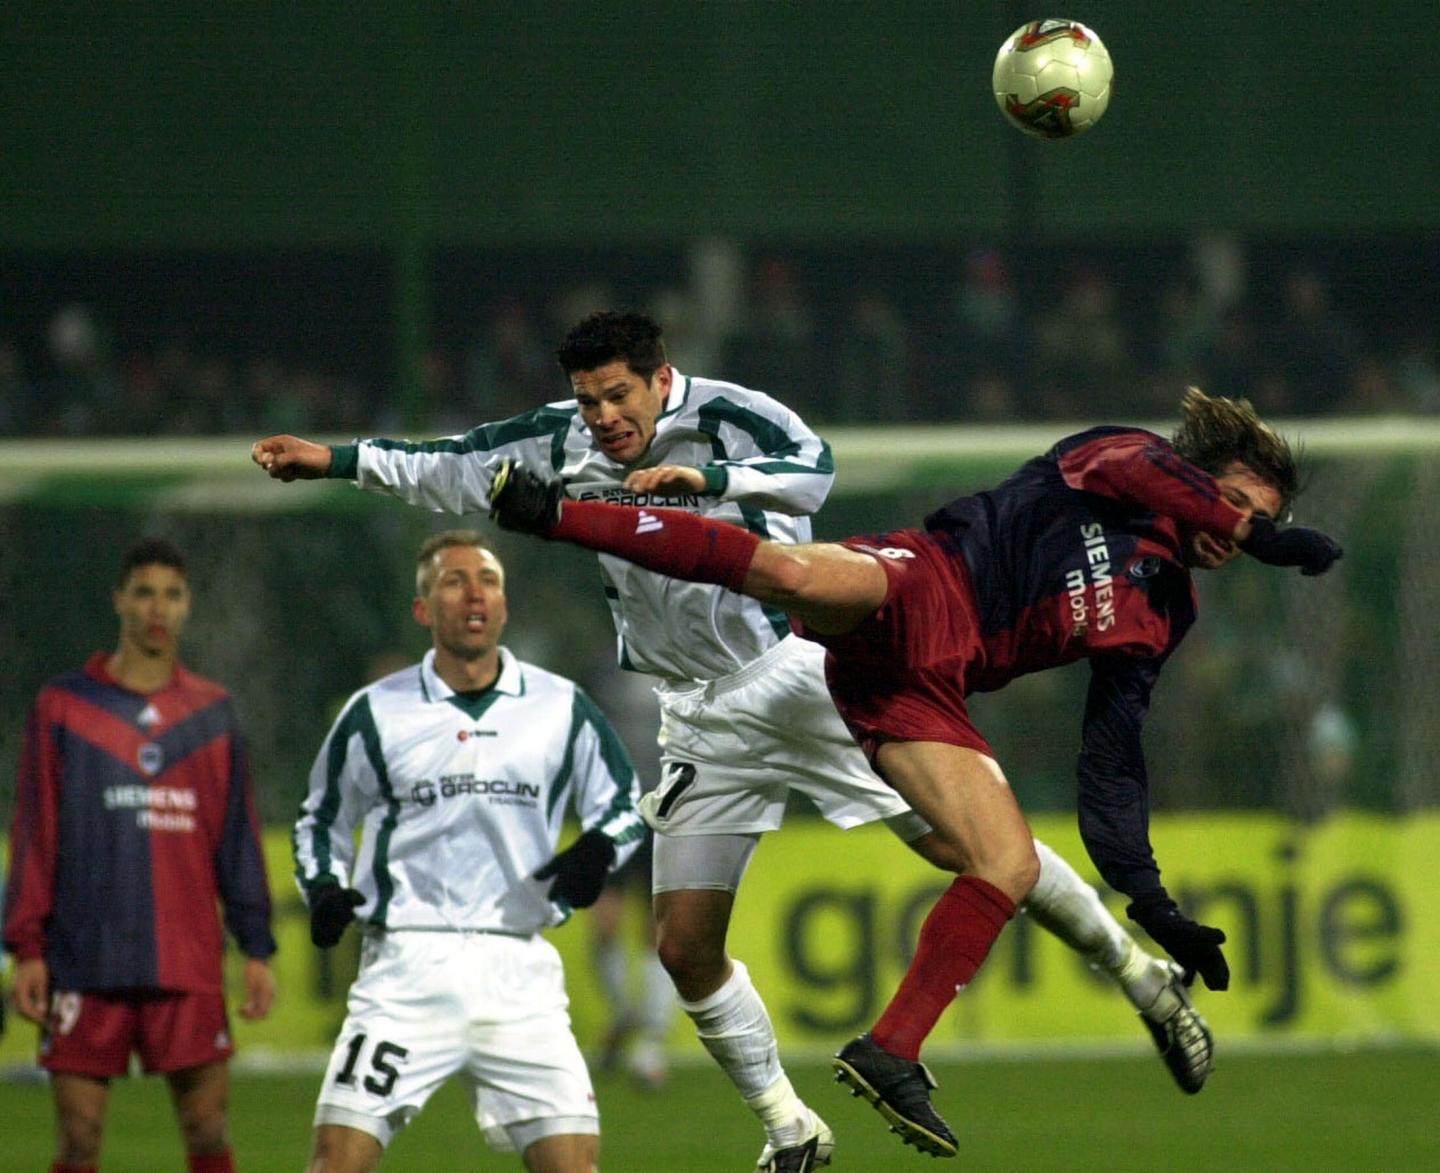 Piotr Piechniak podczas meczu Groclin Dyskobolia Grodzisk Wielkopolski - Girondins Bordeaux 0:1 (26.02.2004).